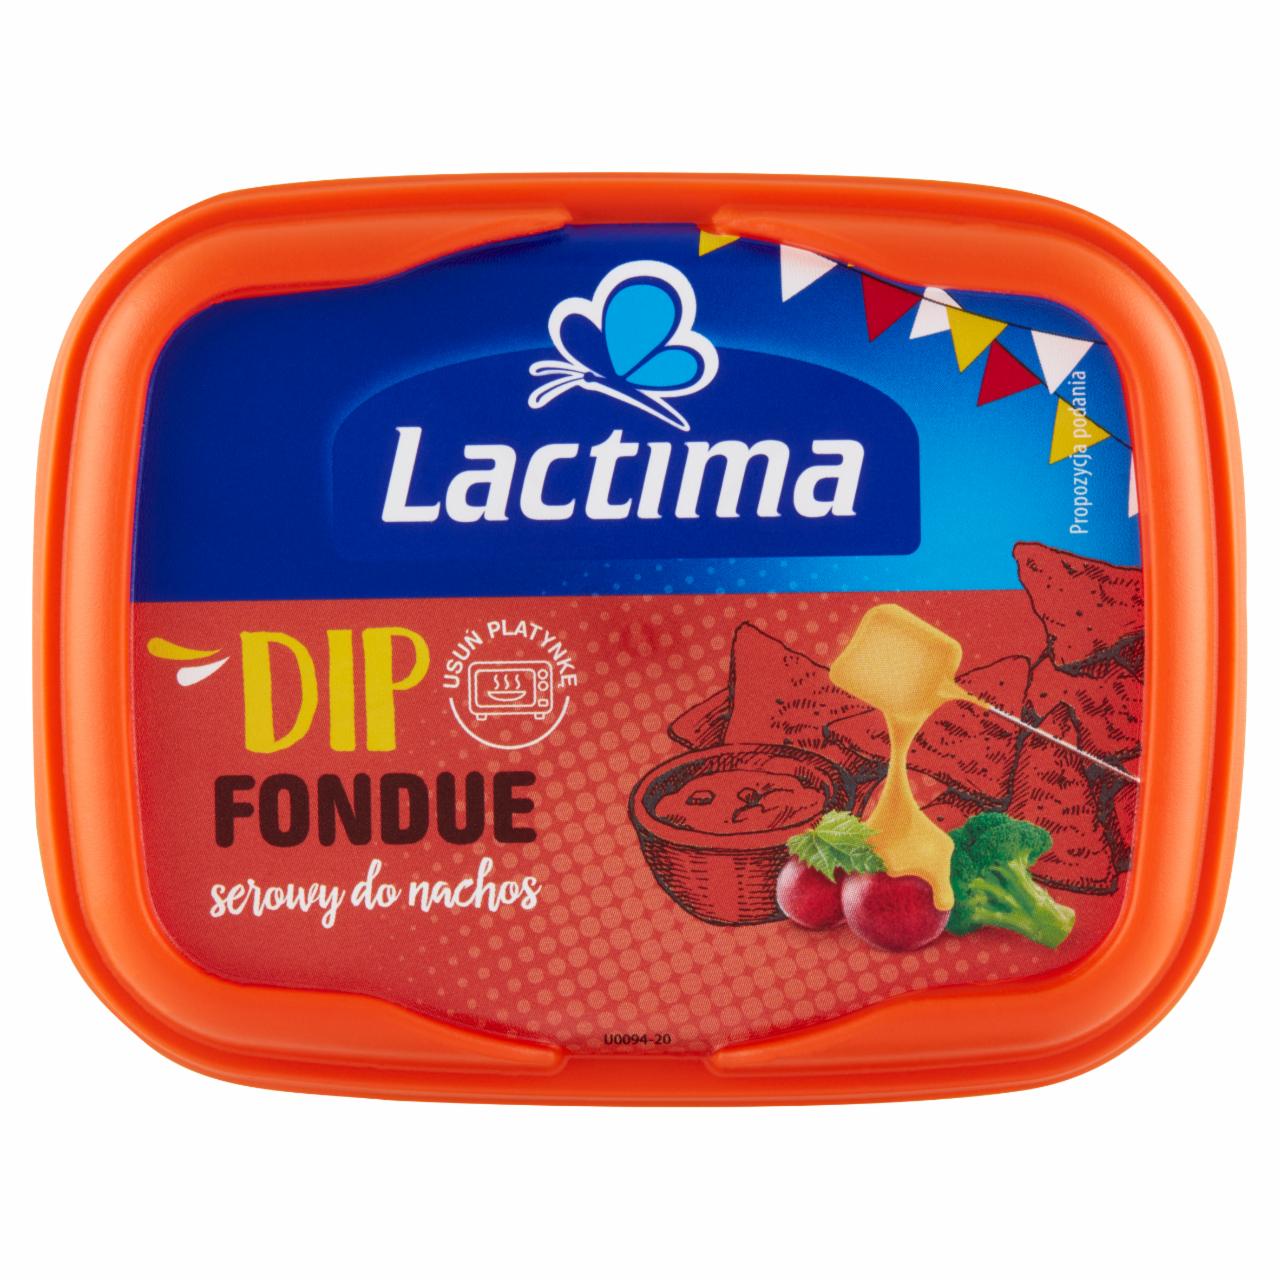 Zdjęcia - Lactima Dip serowy do nachos Fondue 150 g